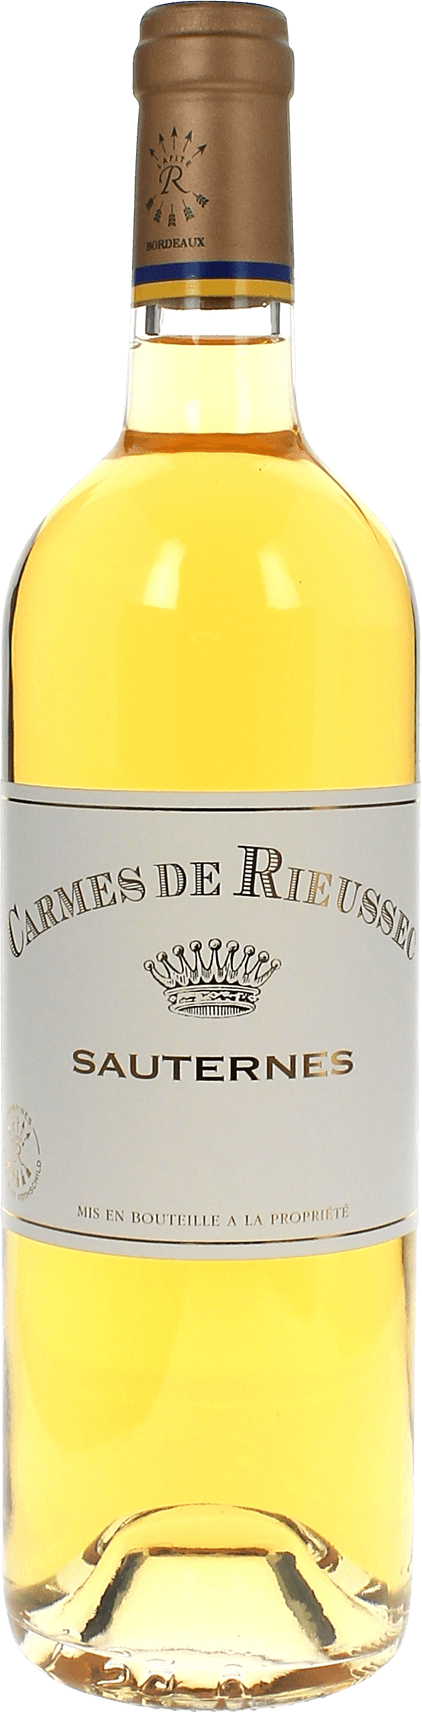 Carmes de rieussec 2015  Sauternes Barsac, Bordeaux blanc